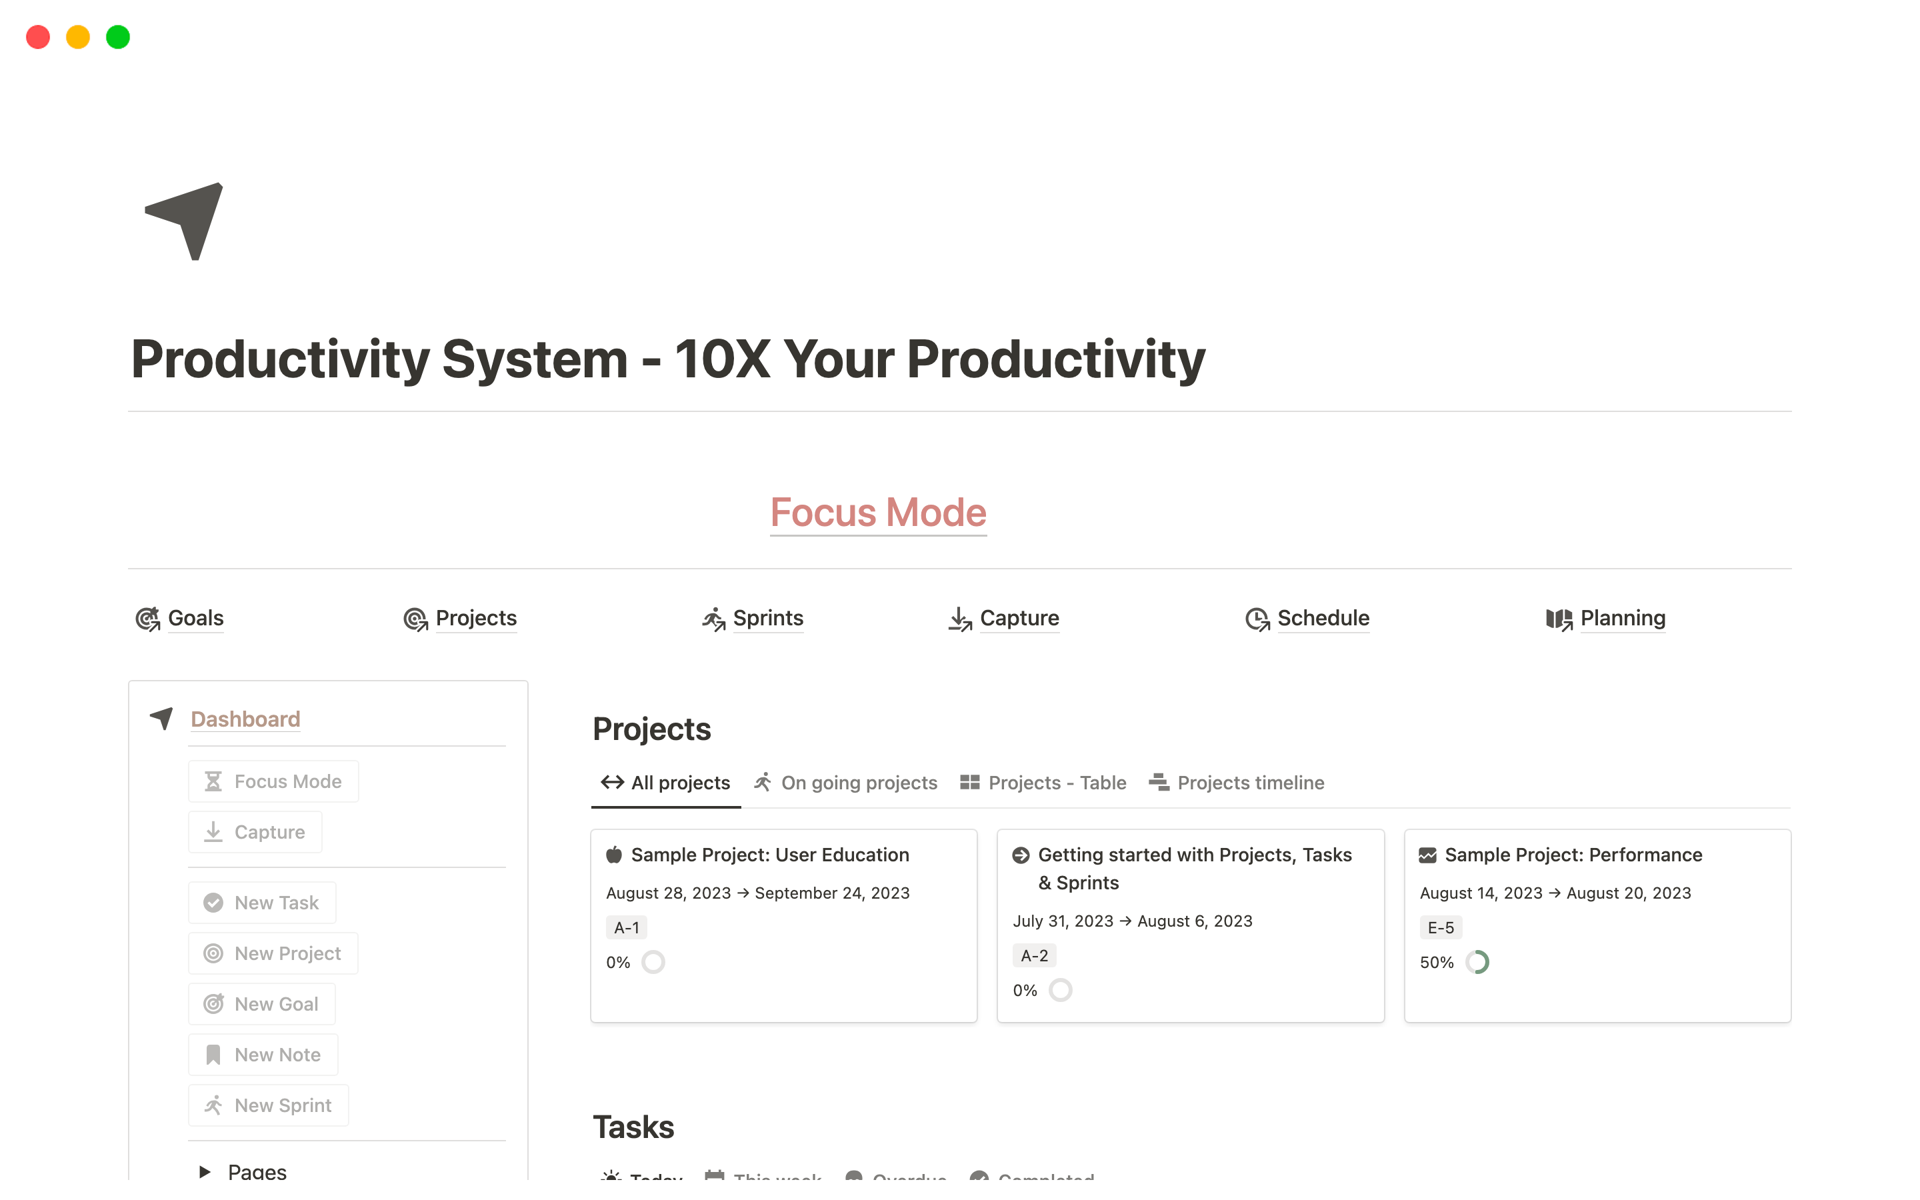 Uma prévia do modelo para Productivity System - 10X Your Productivity